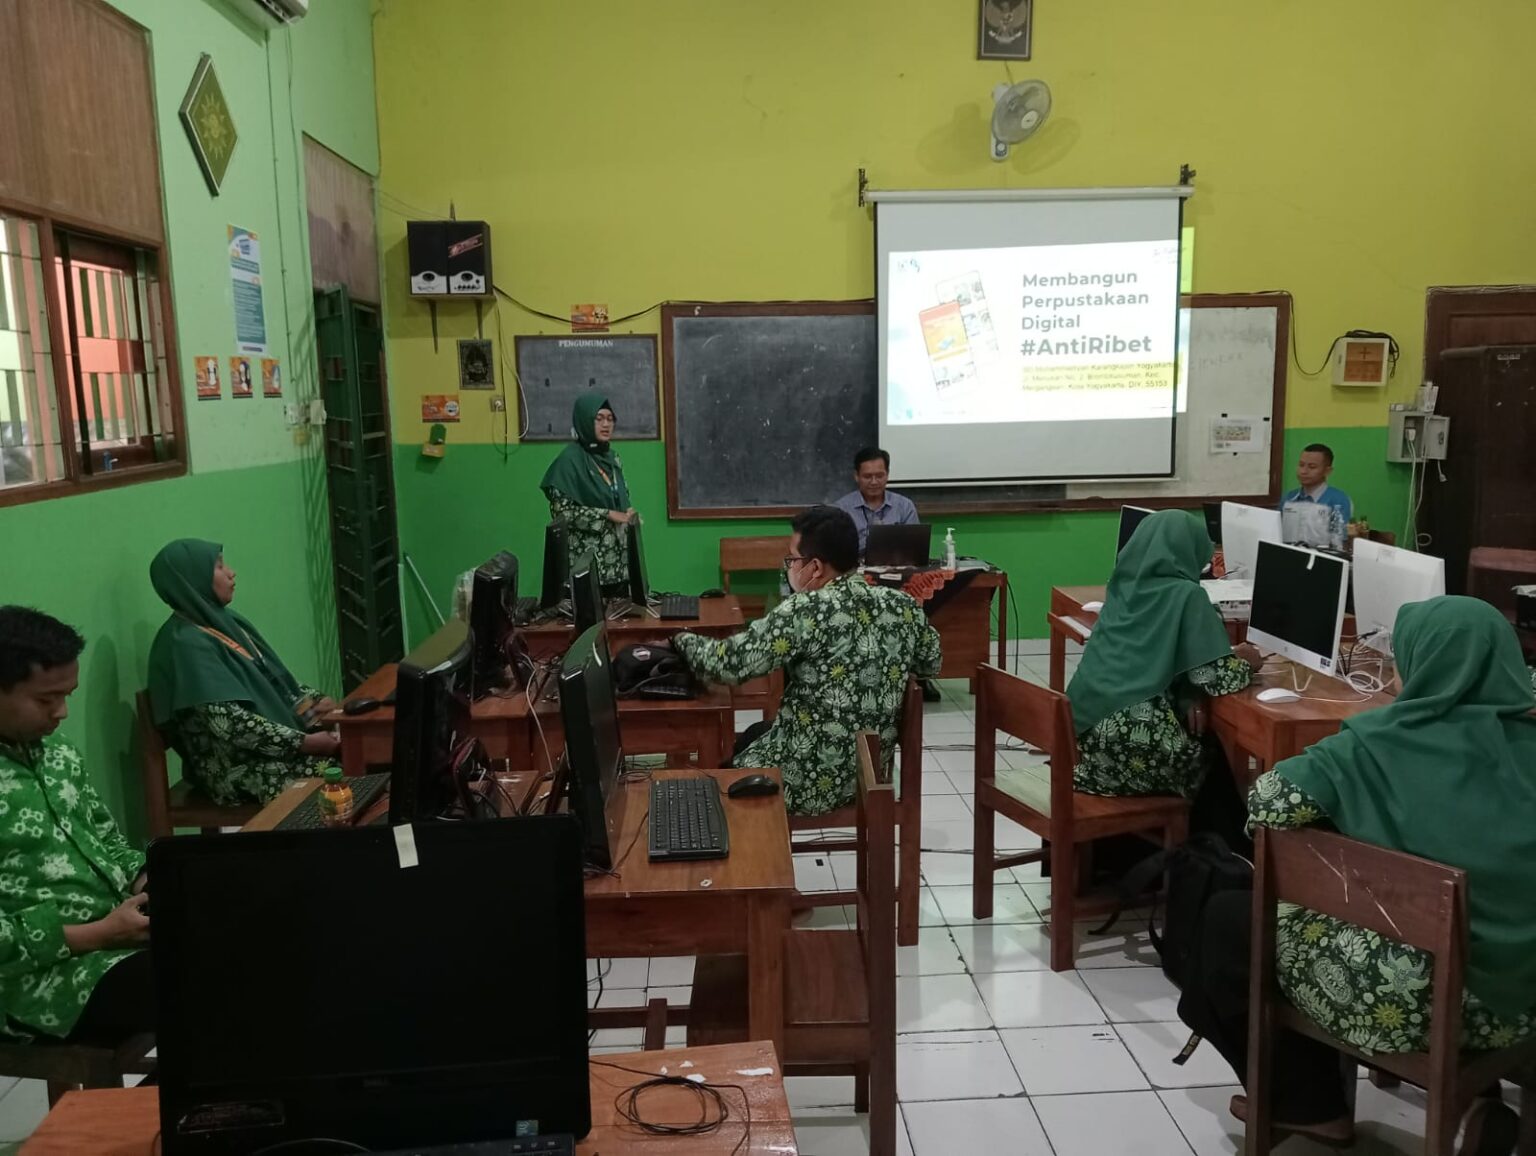 Workshop Perpuskita di SMA Muhammadiyah Karangkajen 1 dan SMA Muhammadiyah Karangkajen 2